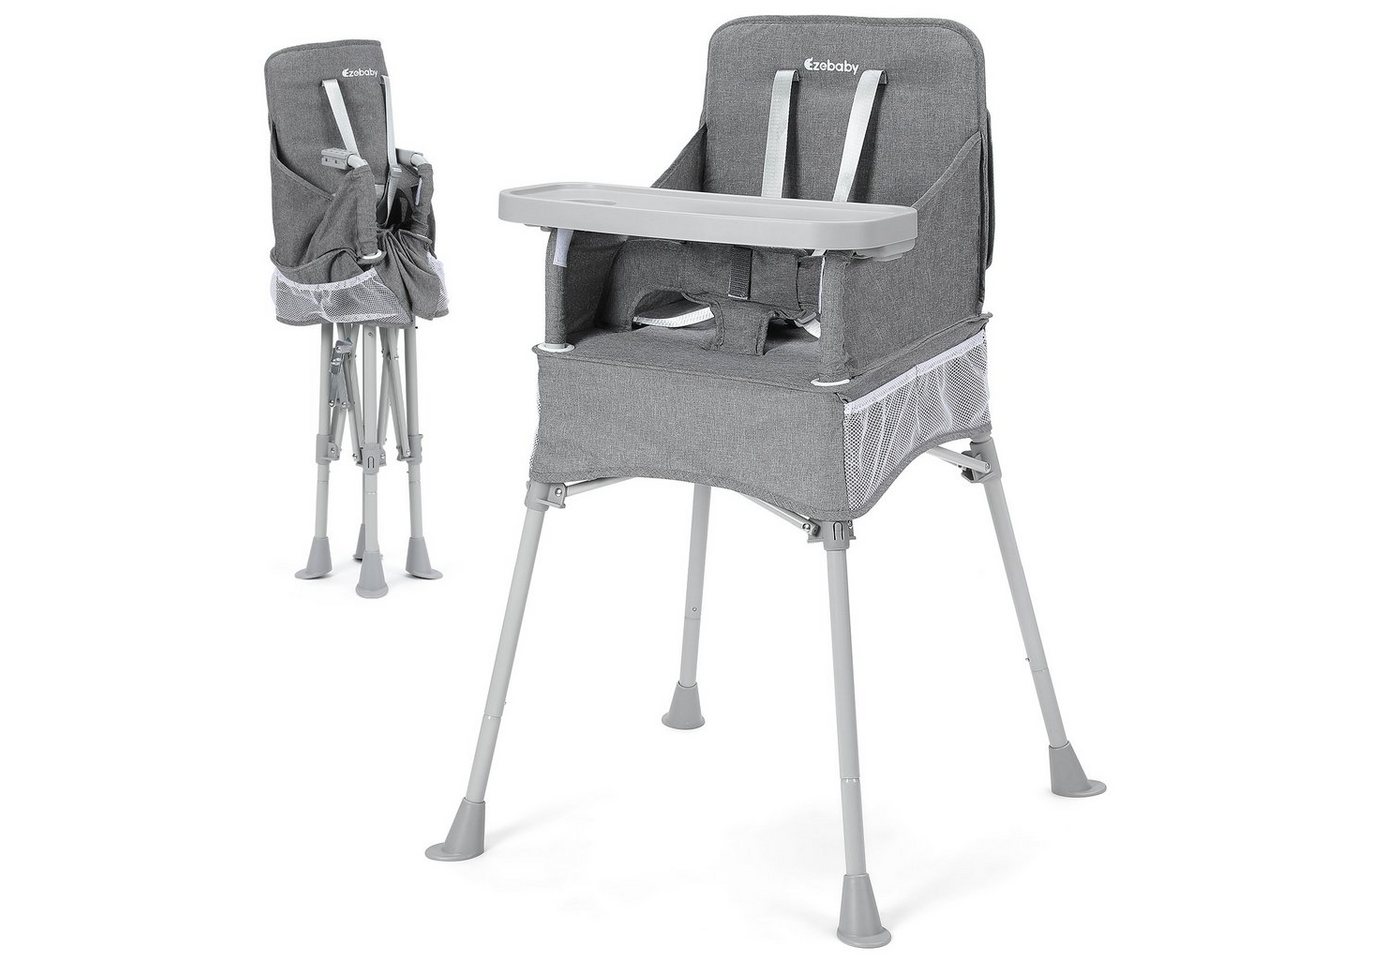 Ezebaby Hochstuhl Baby Camping Stuhl Faltbar Kinderstuhl mit Tablett und Tragtasche von Ezebaby